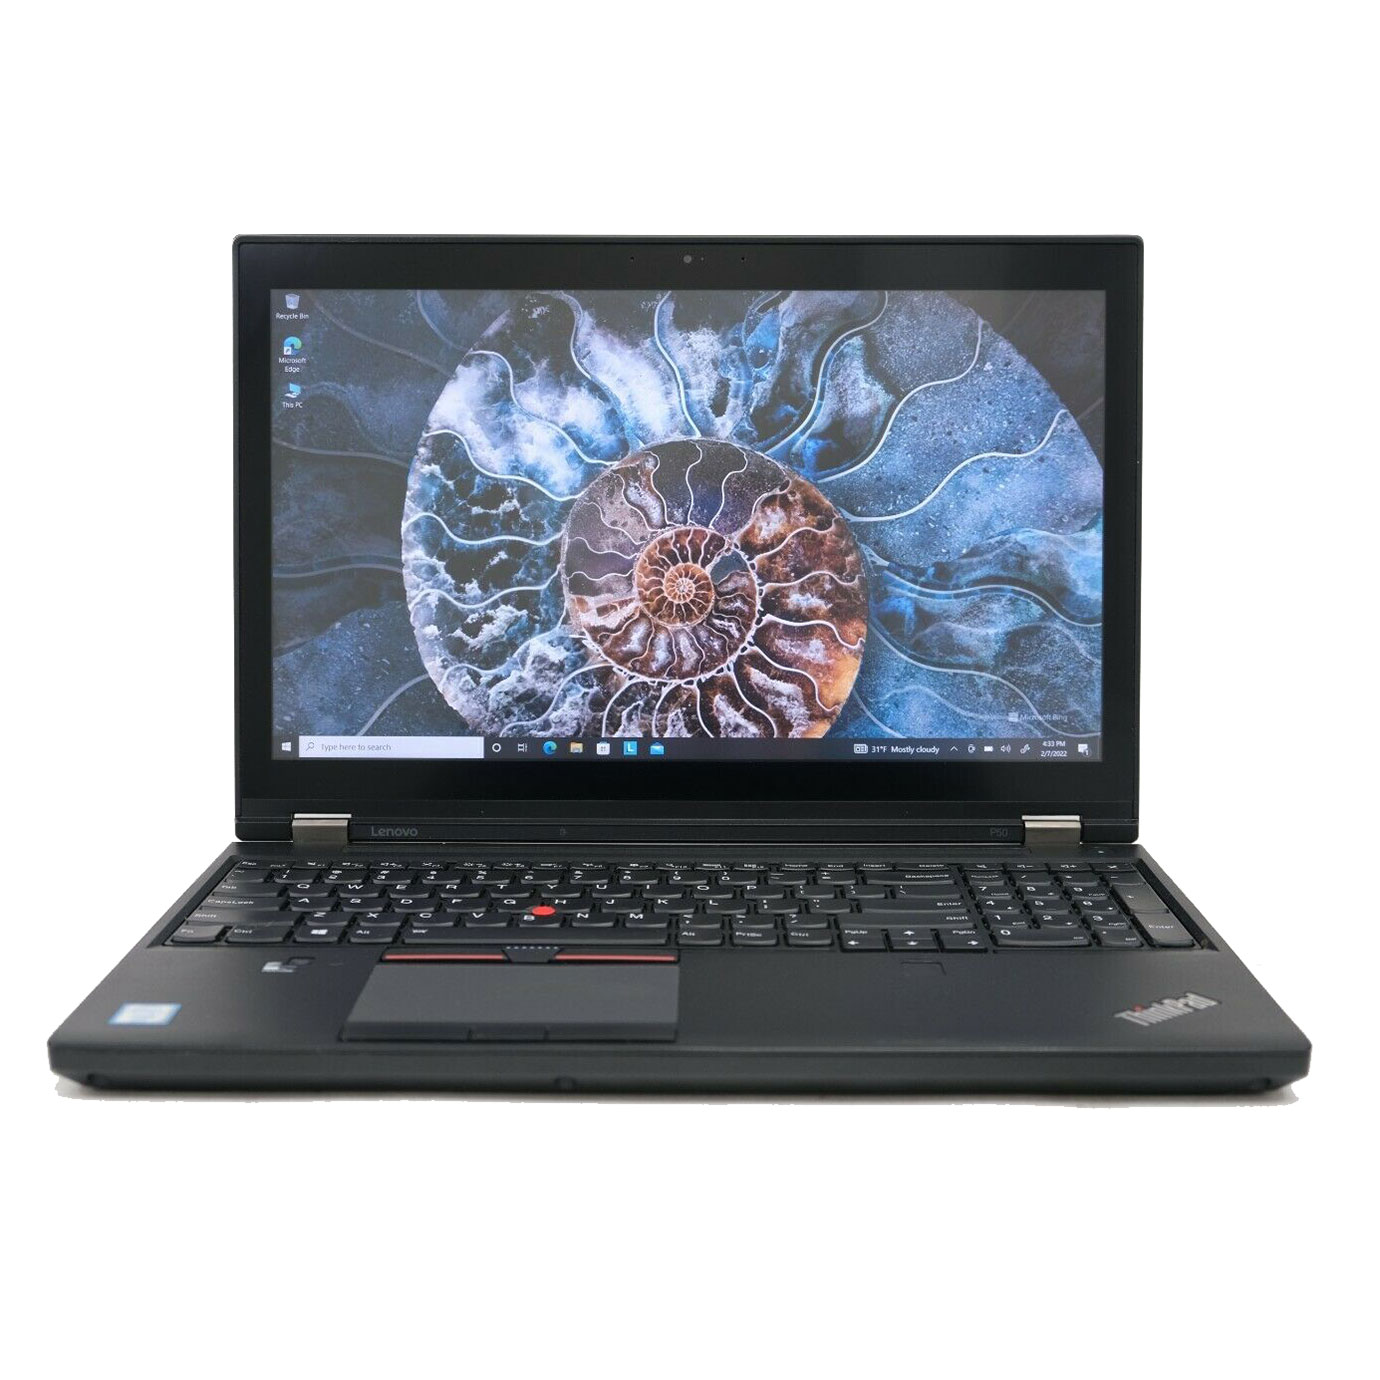 Lenovo Thinkpad P50 Xeon E3-1505M,  Ram 8GB, SSD 256GB, Quadro M2000M 2GB, 15.6 Inch FHD IPS cảm ứng